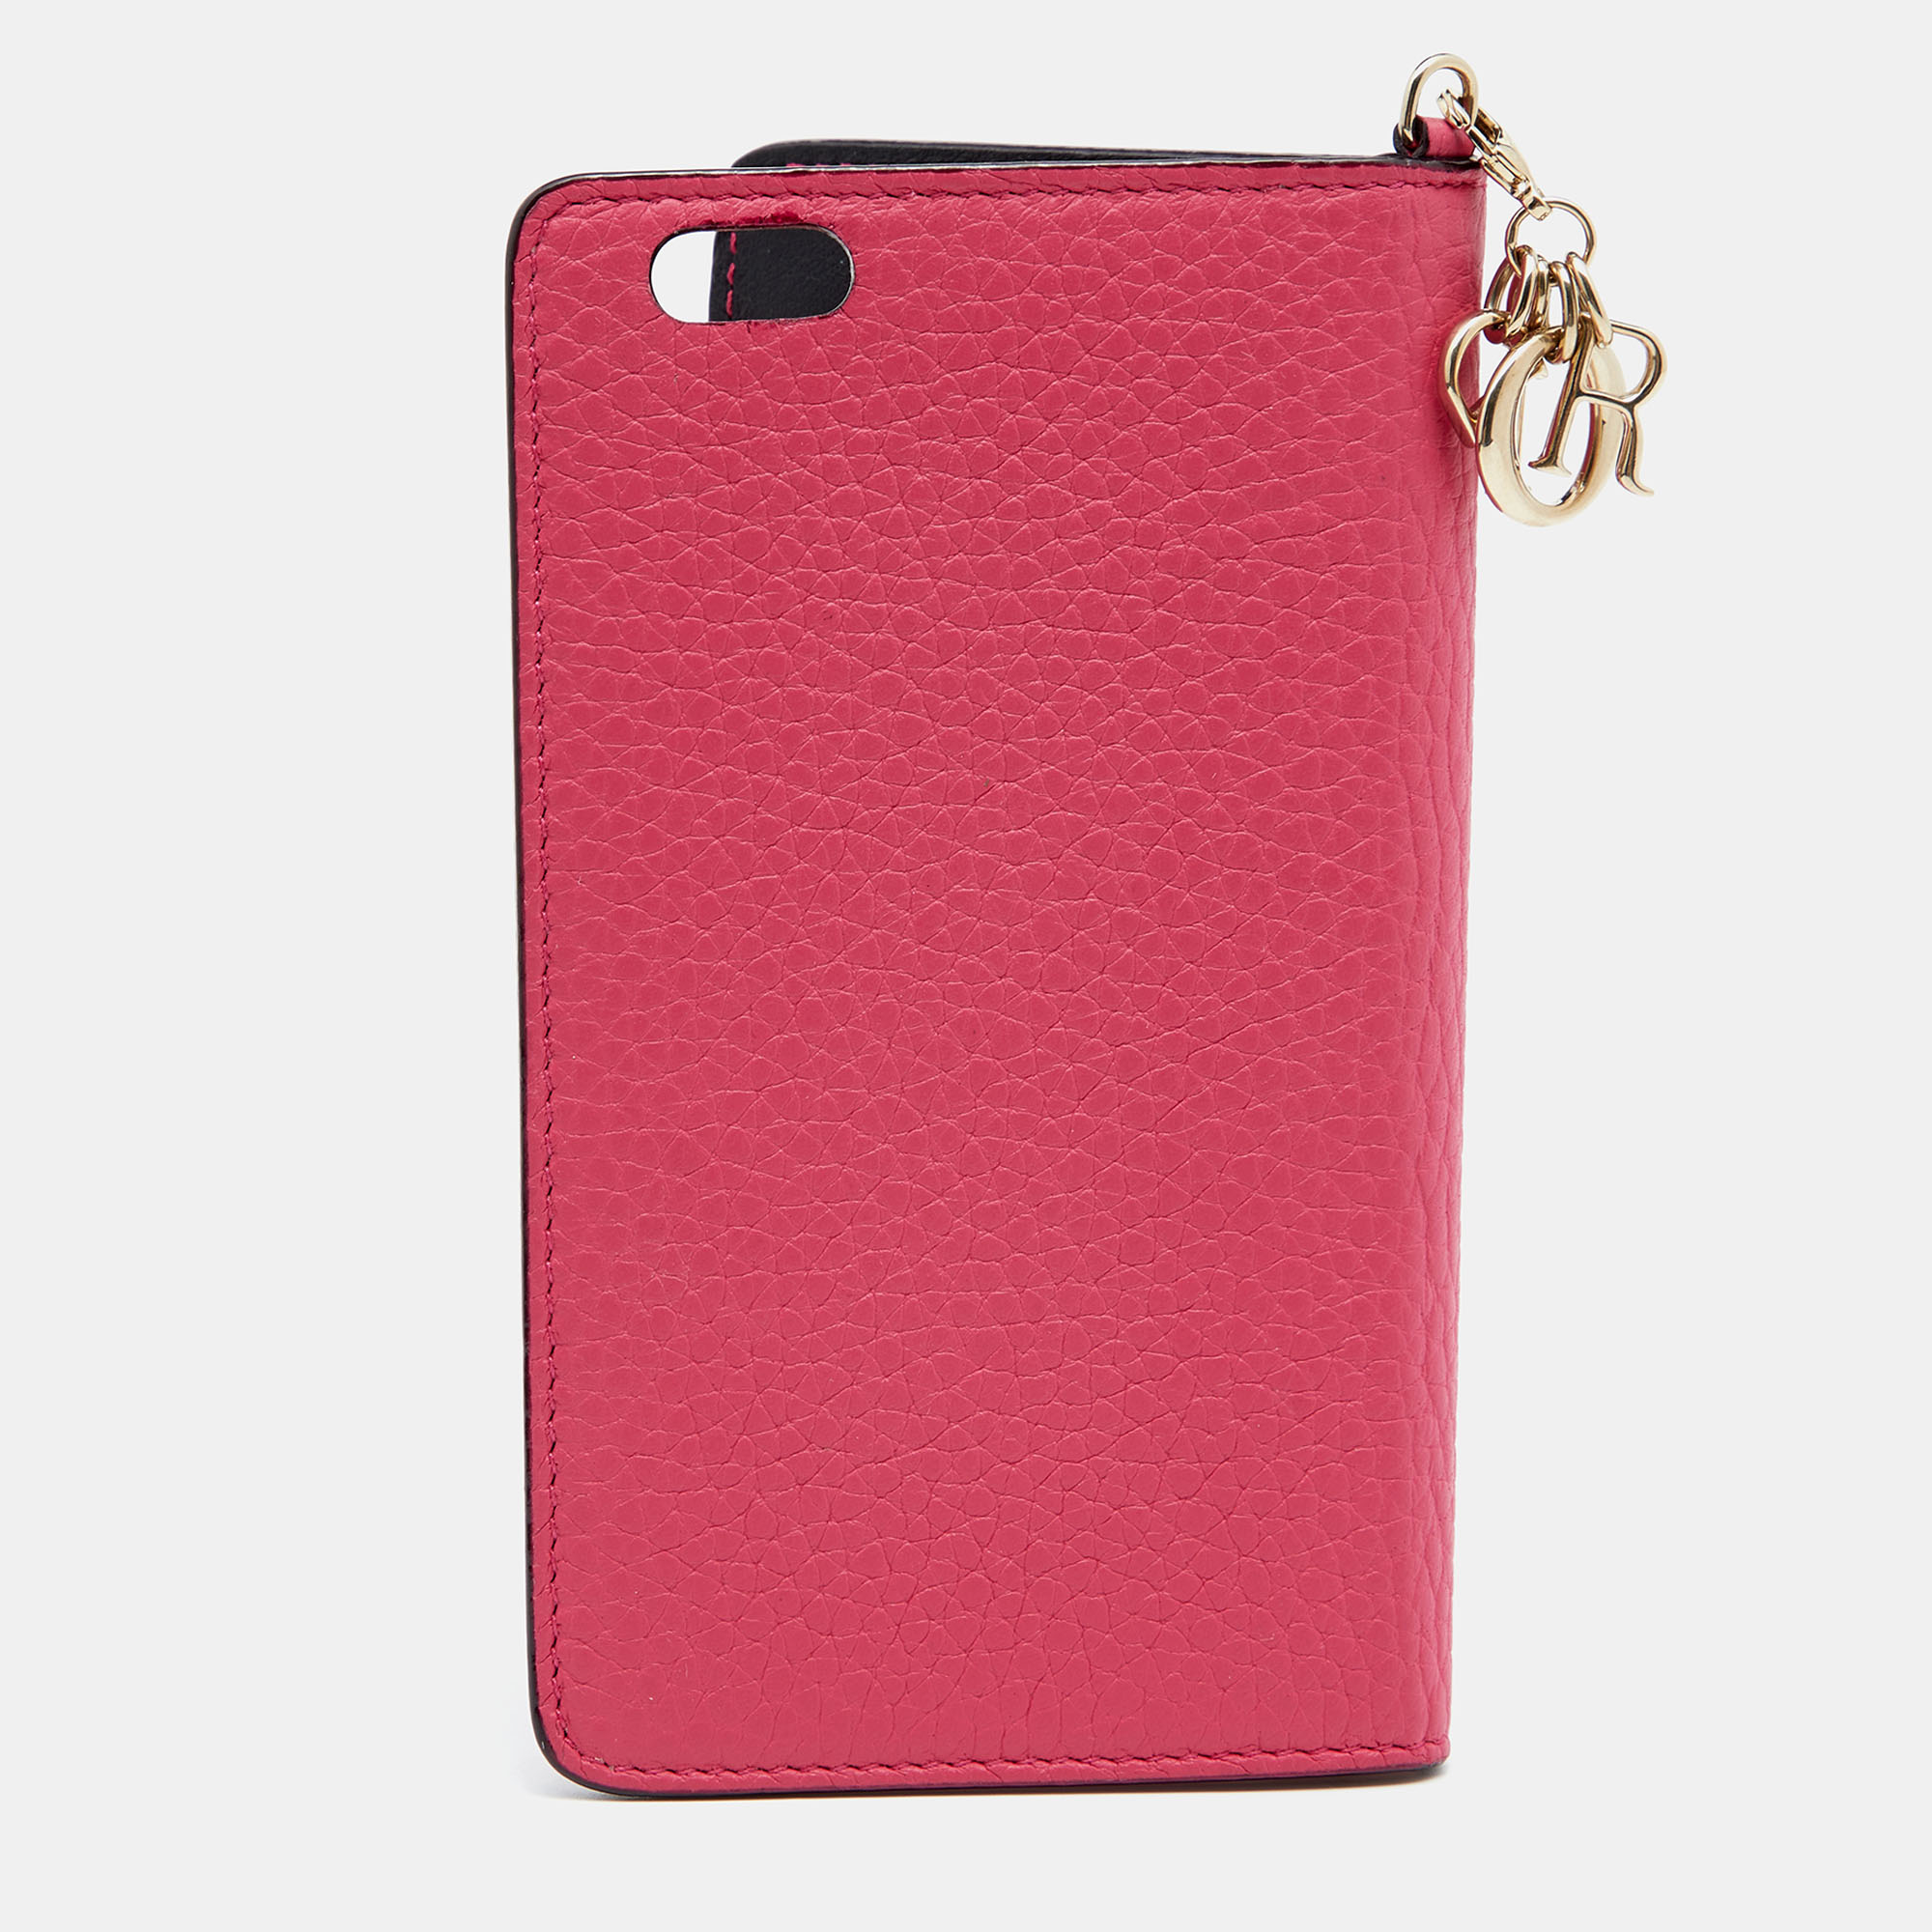 Dior Magenta Leather IPhone 6 Folio Case